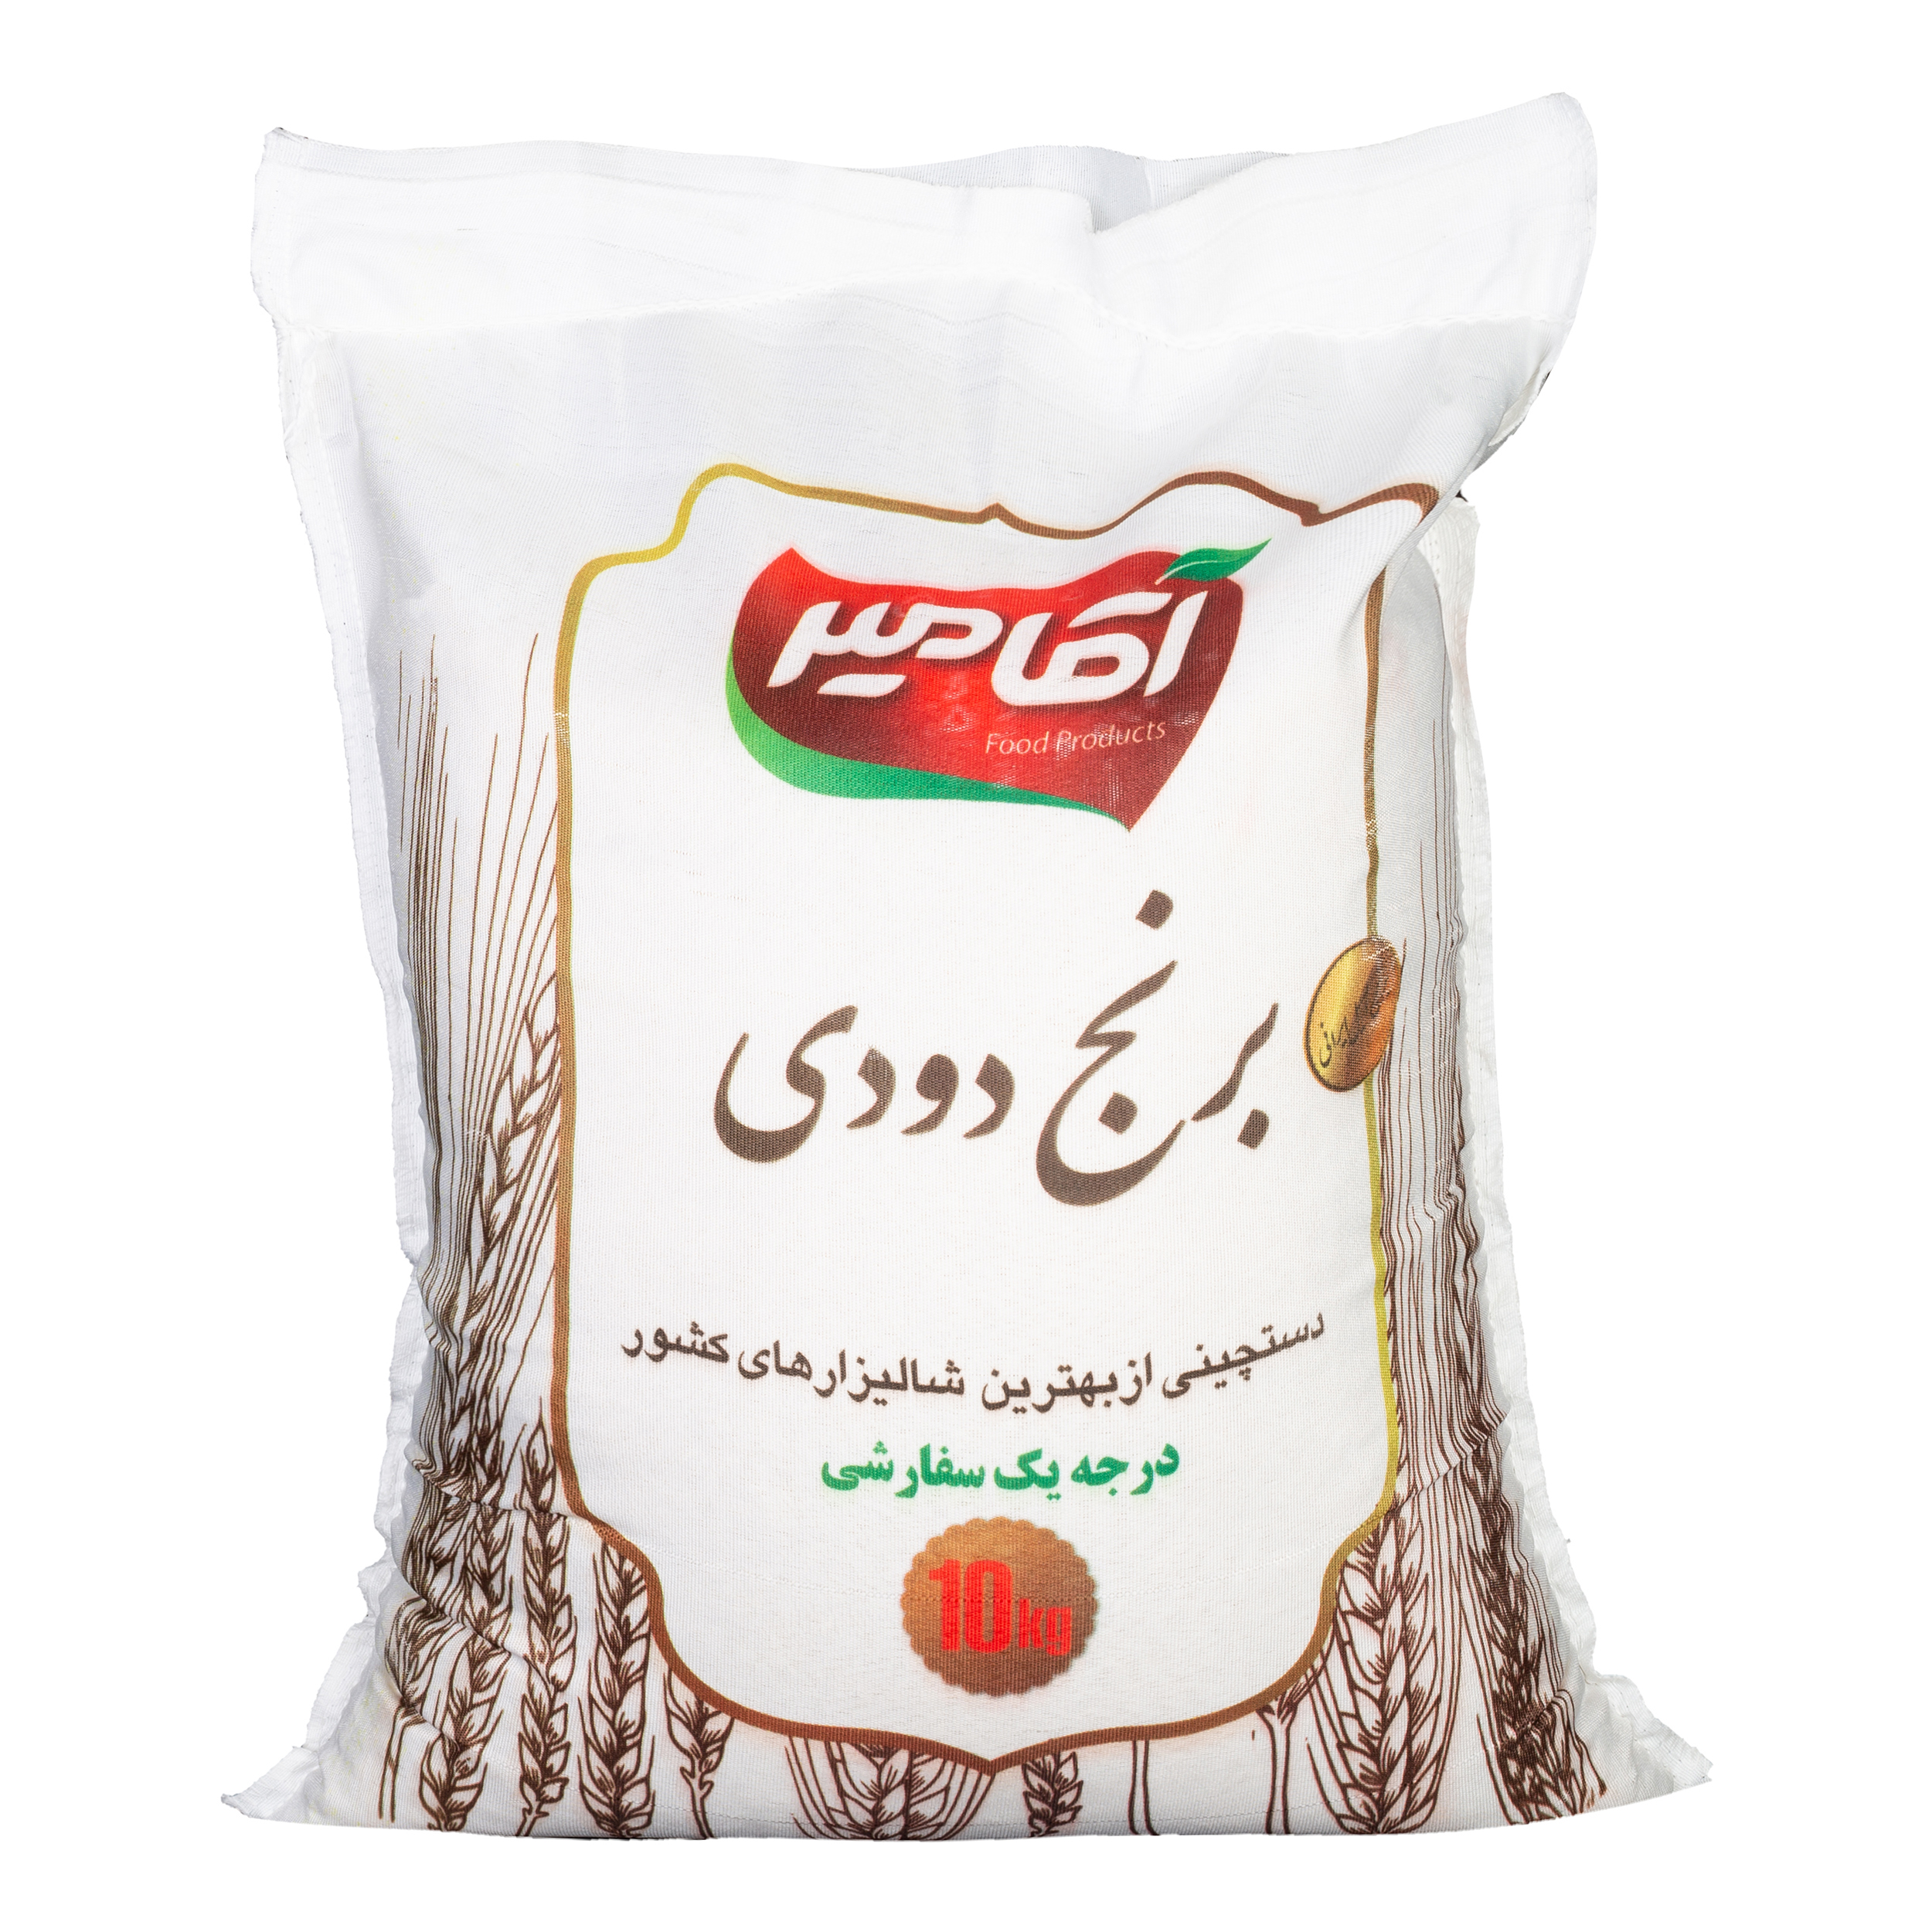 نکته خرید - قیمت روز برنج دودی آقامیر - 10 کیلوگرم خرید